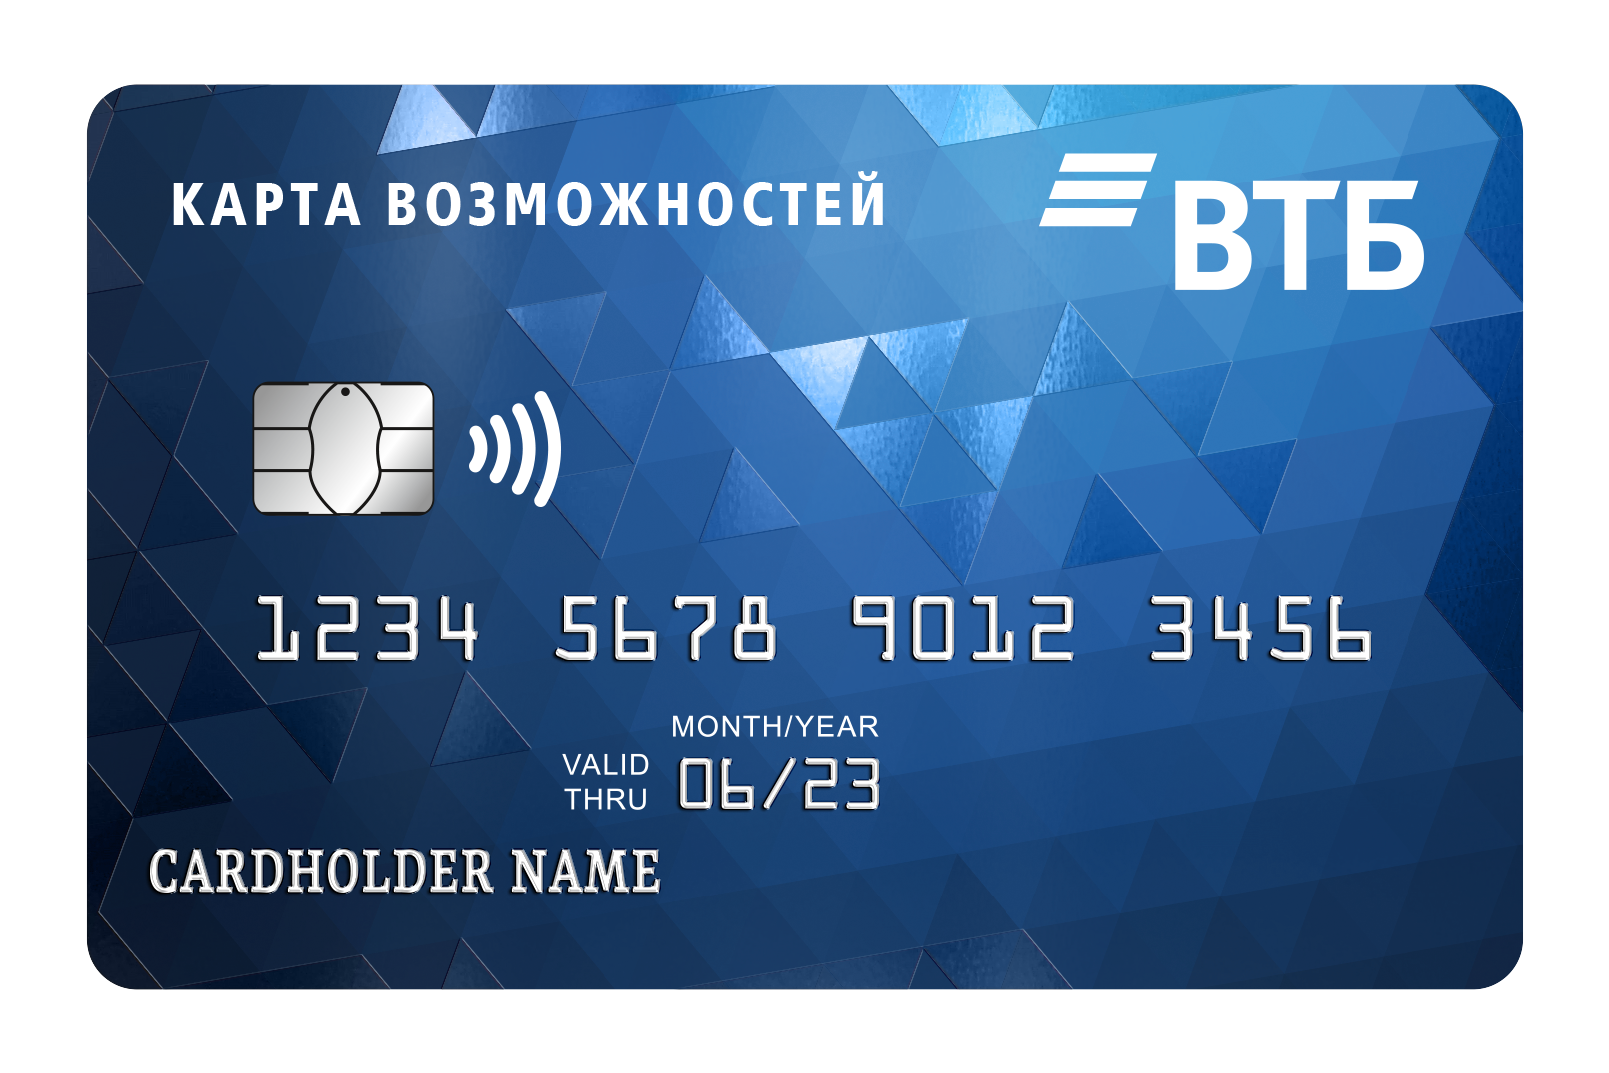 мтс банк заявка на кредит онлайн карта